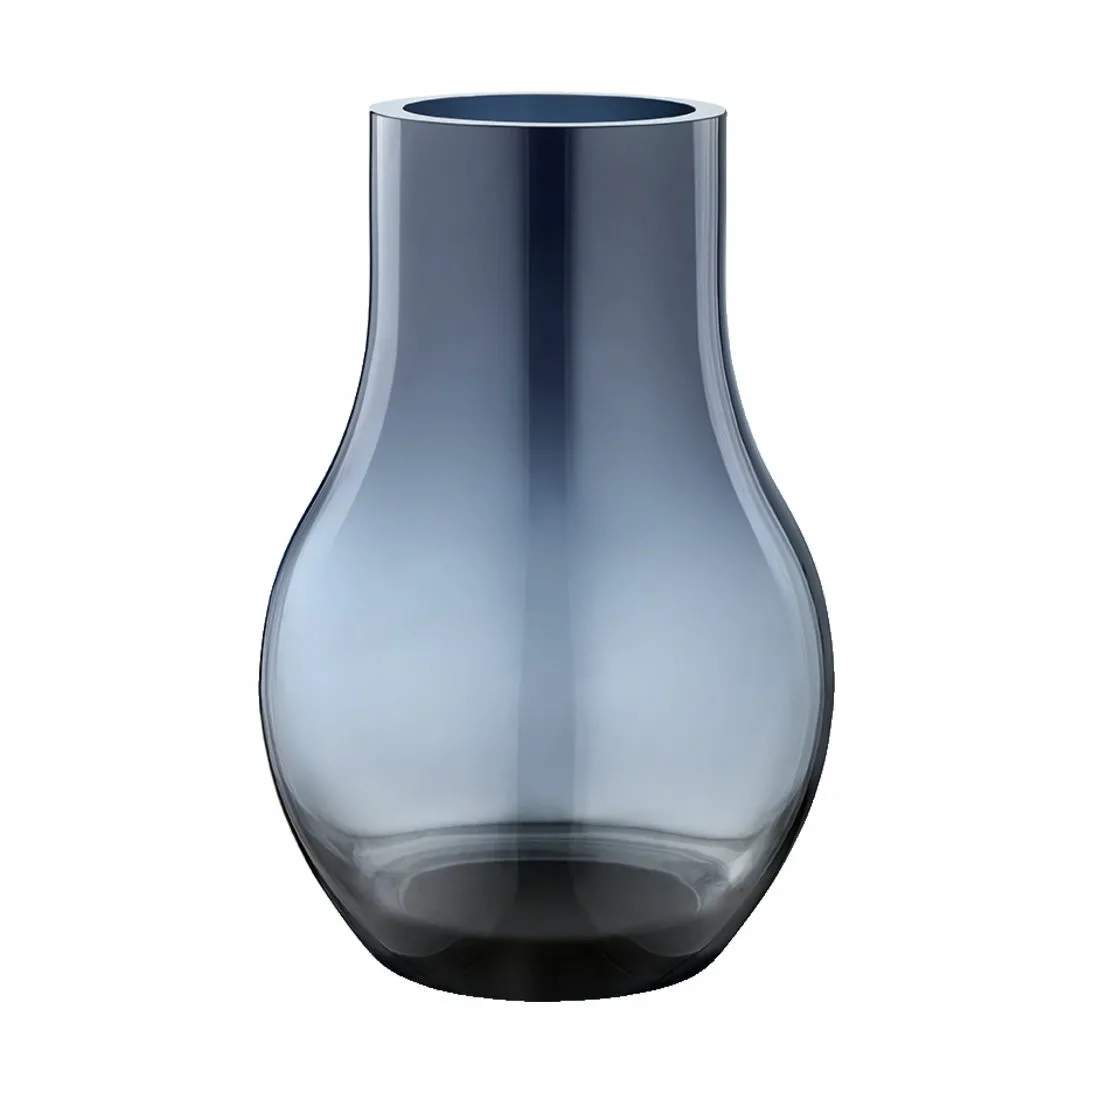 Cafu Vase Mørkeblå 30 cm, mørkeblå, large